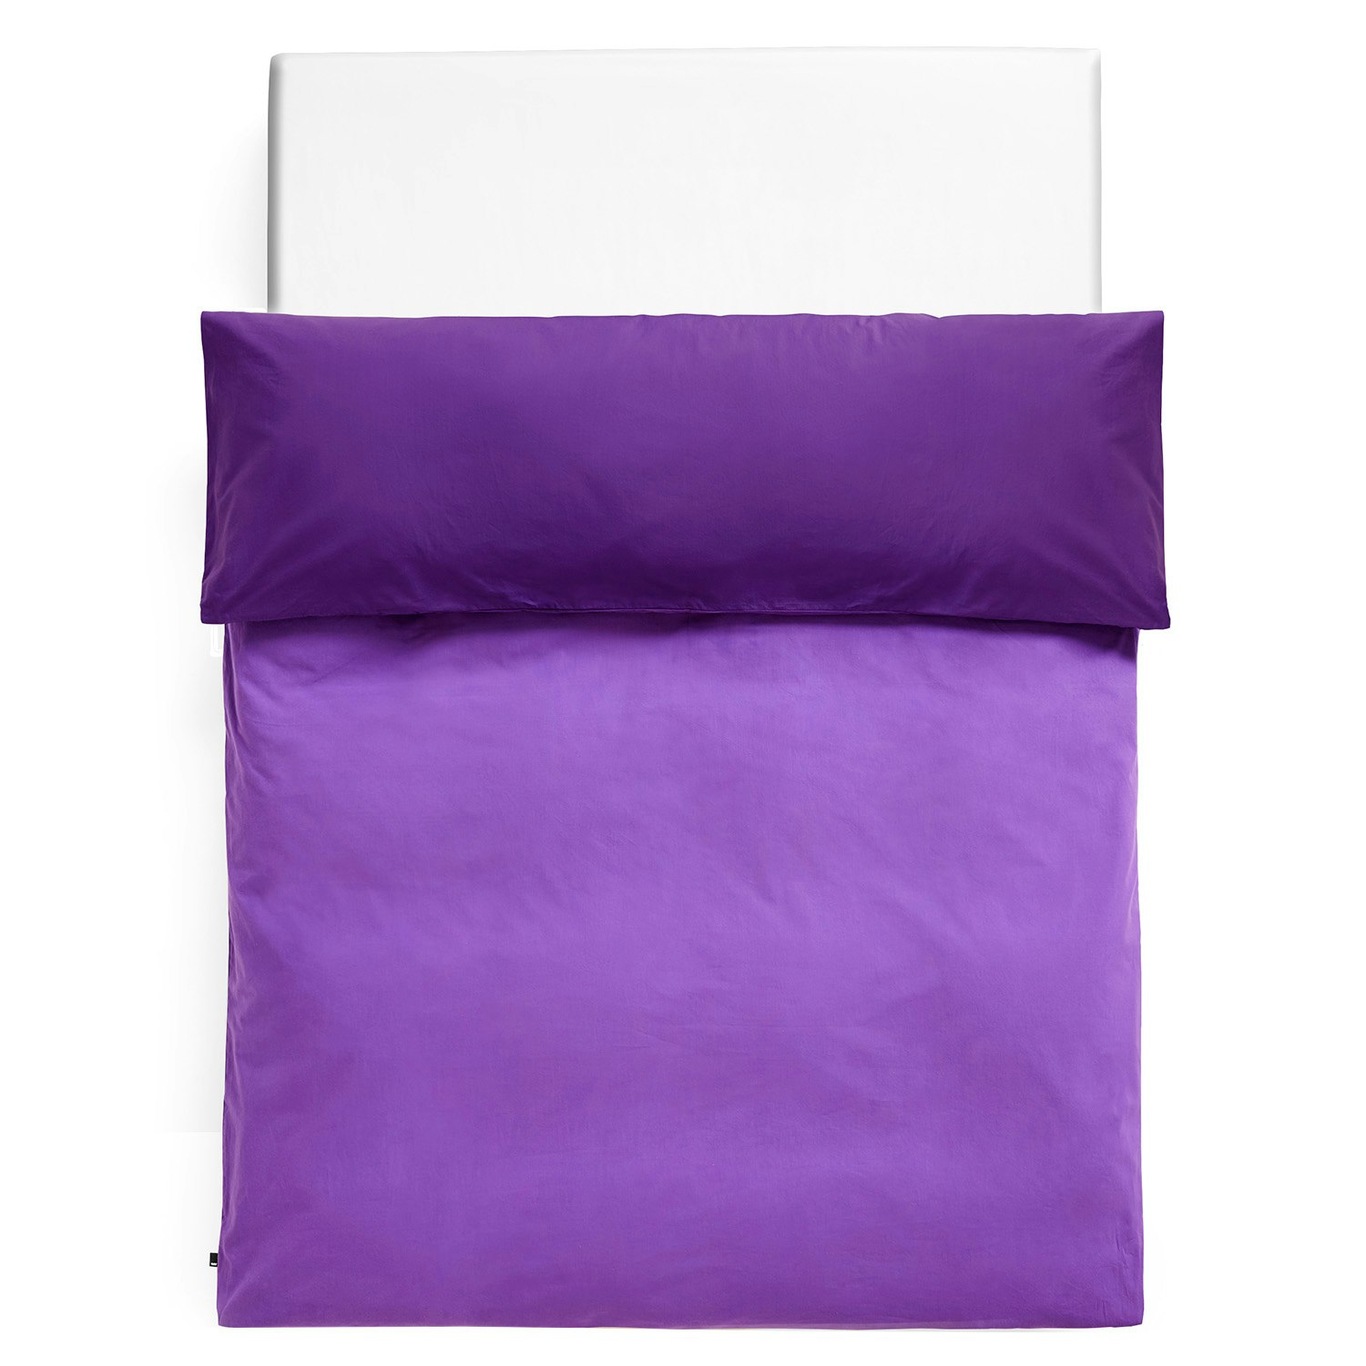 Duo Duvet Cover 200x220 cm, Vivid Purple